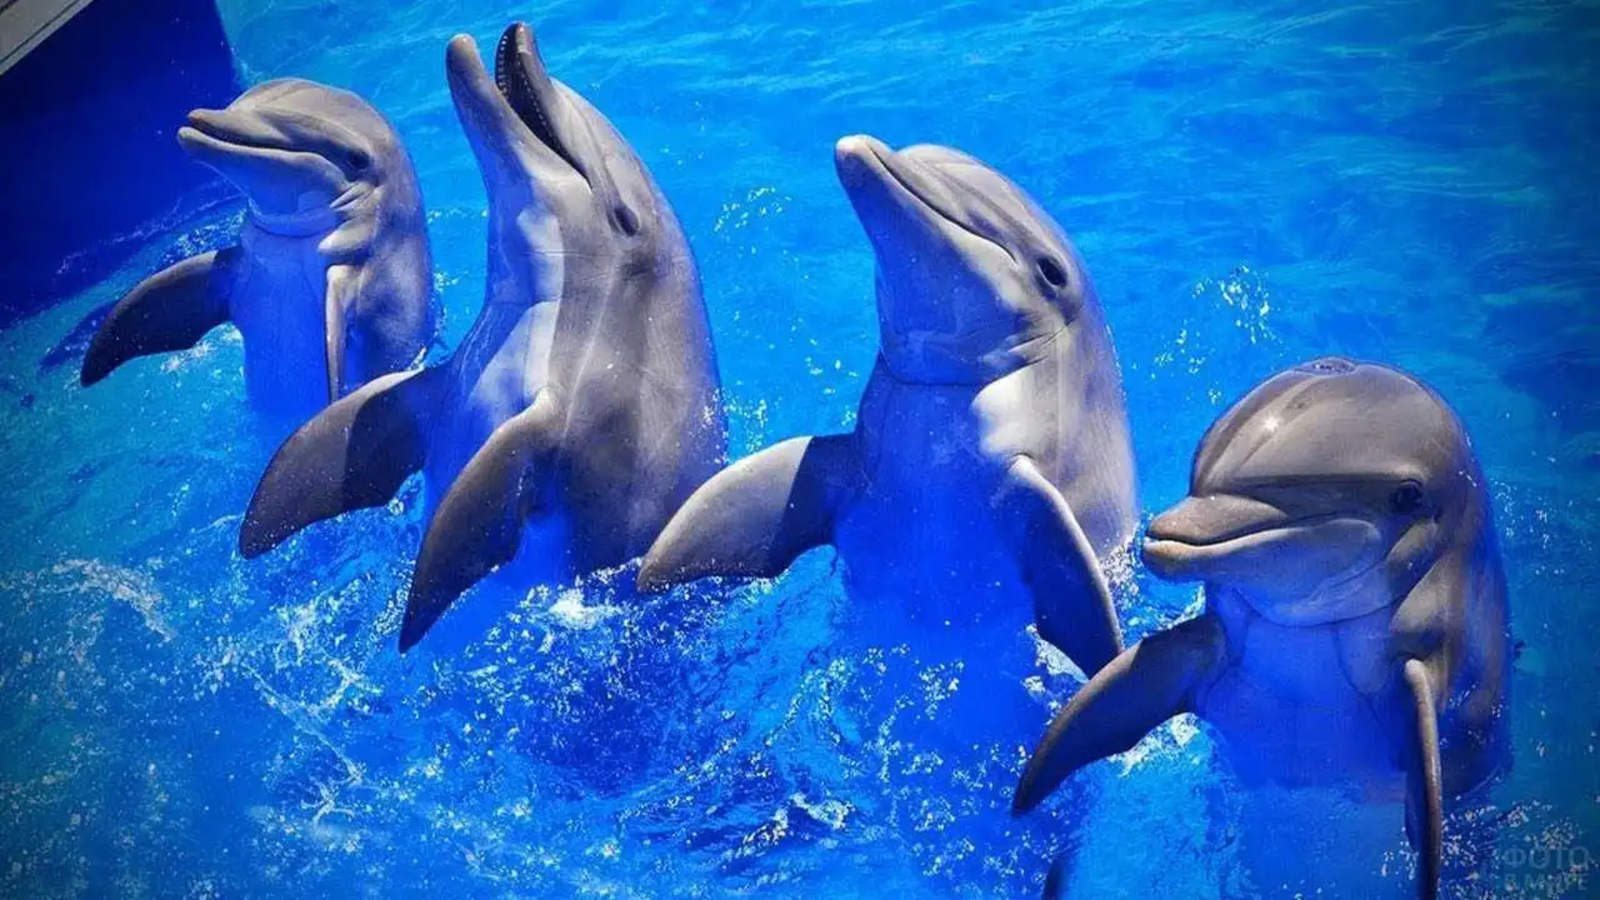 Explore dolphins’ darker side in 10 ways